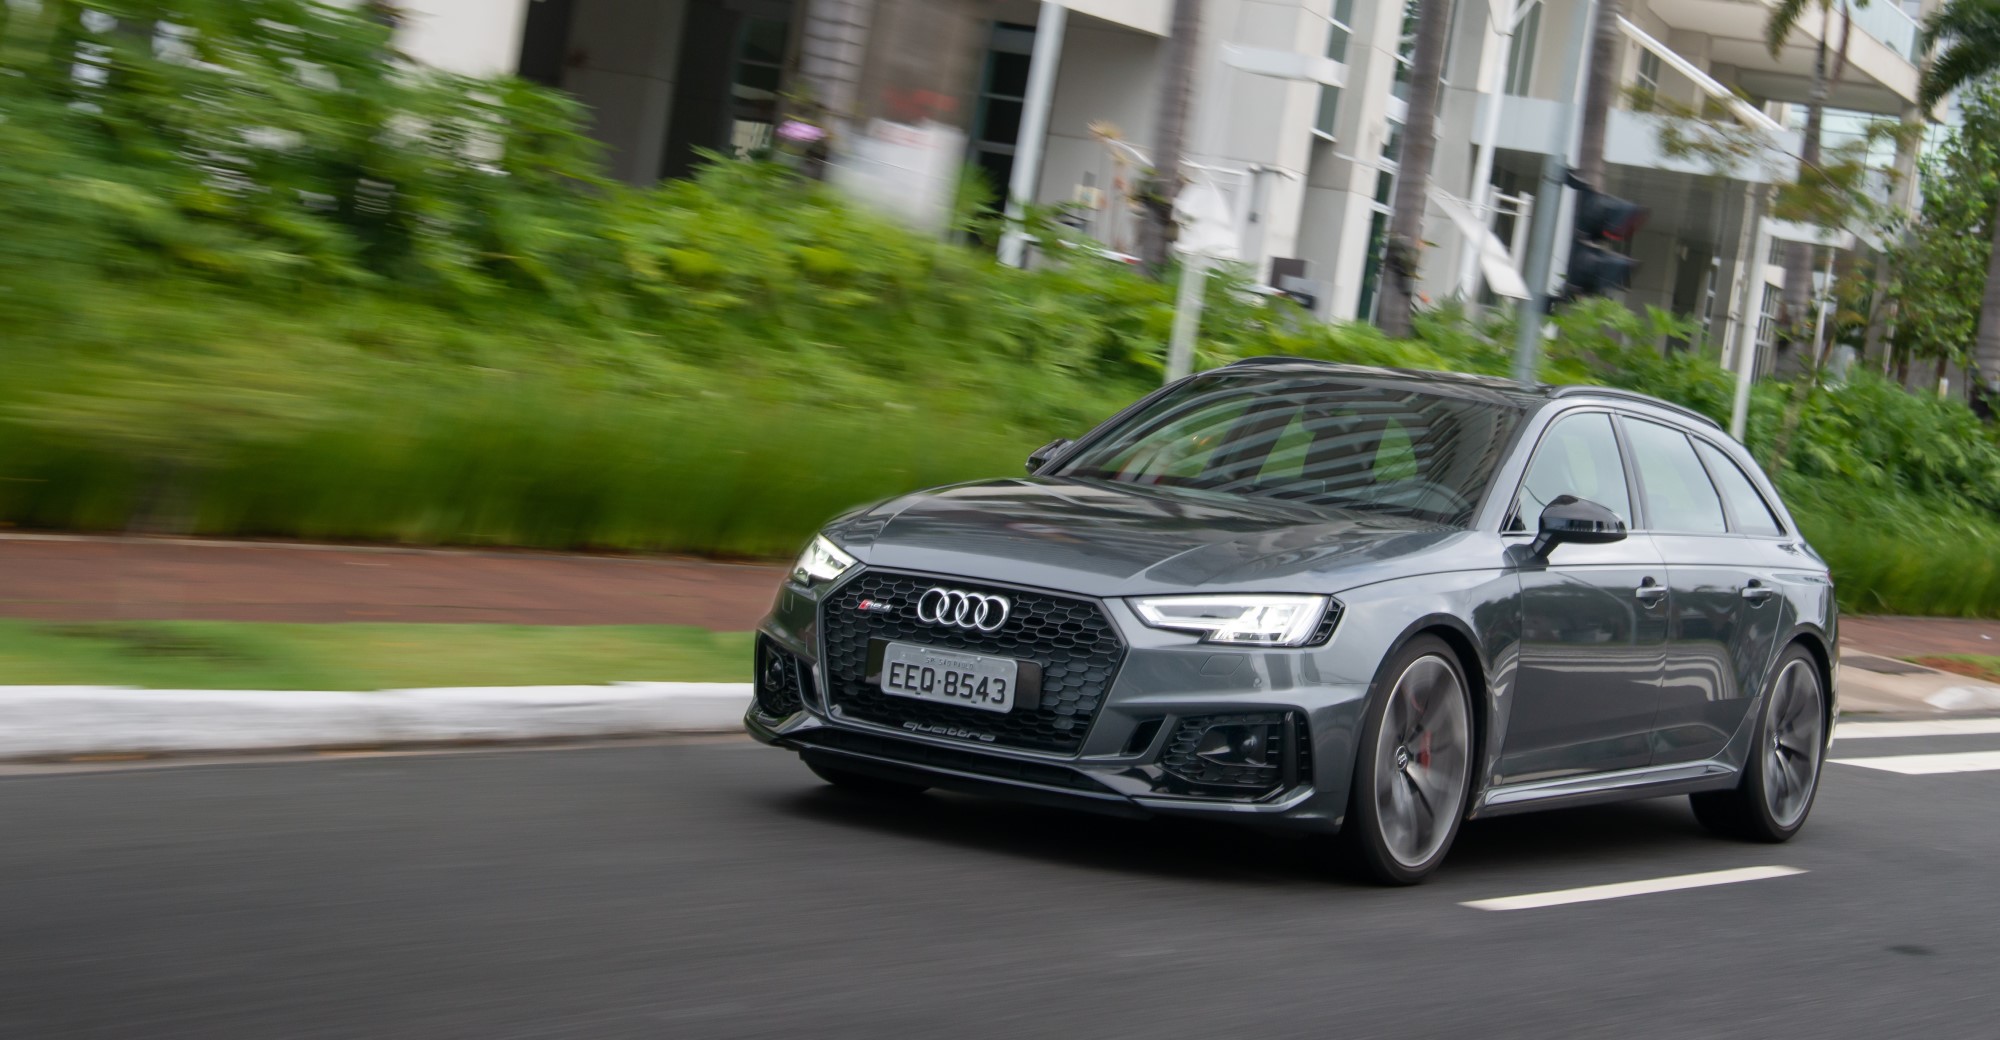 Audi RS 4 Avant chega ao mercado brasileiro